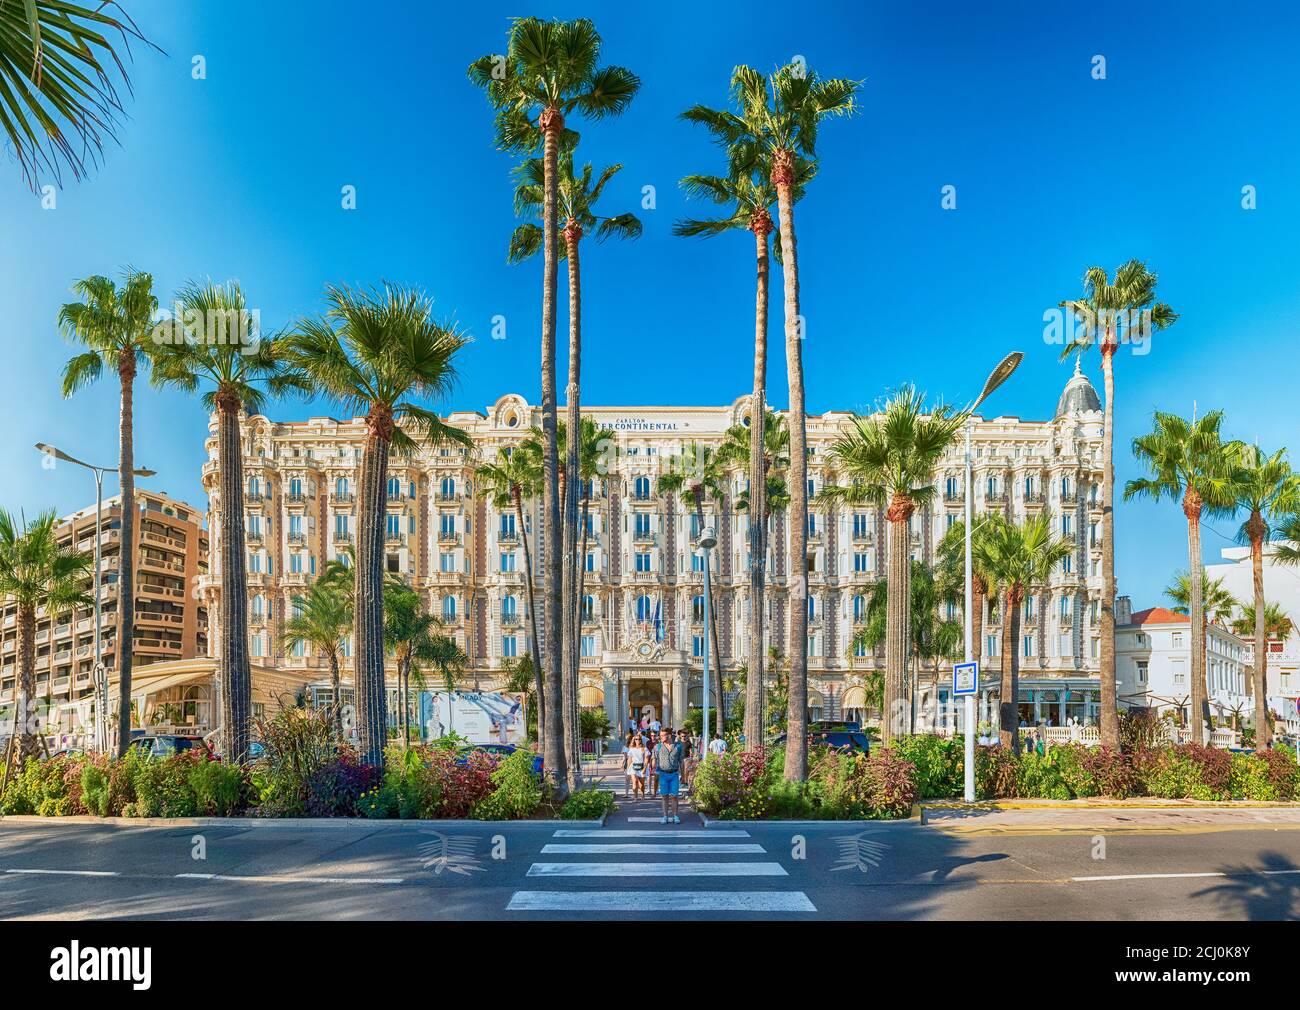 CANNES, FRANCIA - AGOSTO 15: El Intercontinental Carlton Hotel en Cannes, Costa Azul, Francia, visto el 15 de agosto de 2019. Es un hotel de lujo construido Foto de stock